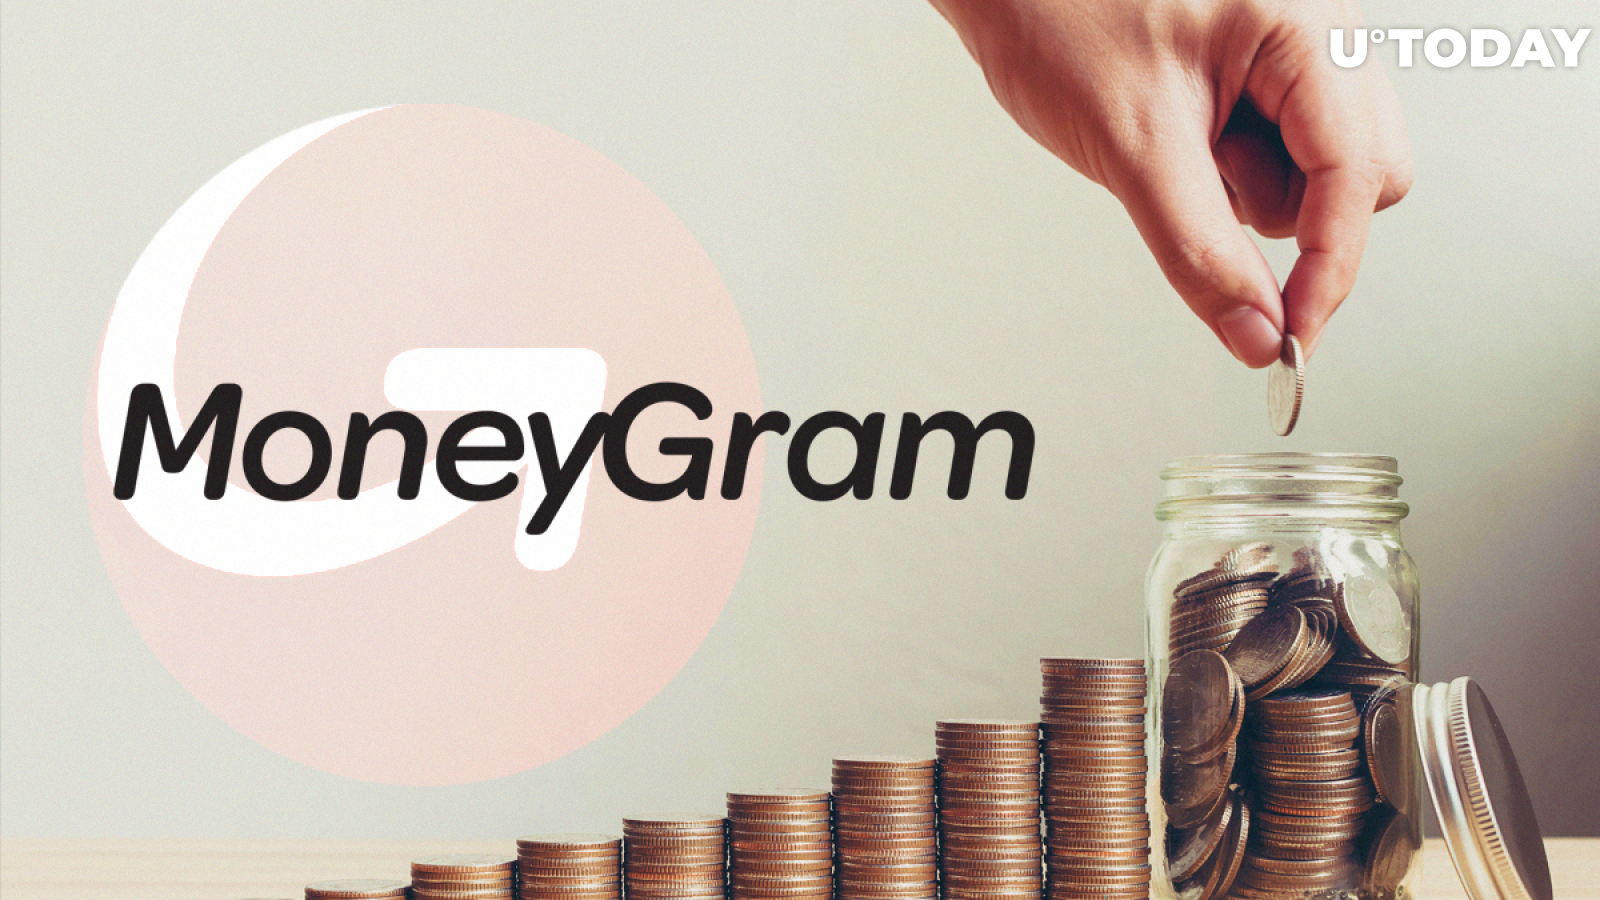 Ripple’s Partner MoneyGram Beats Expectations in Q4 Earnings Report